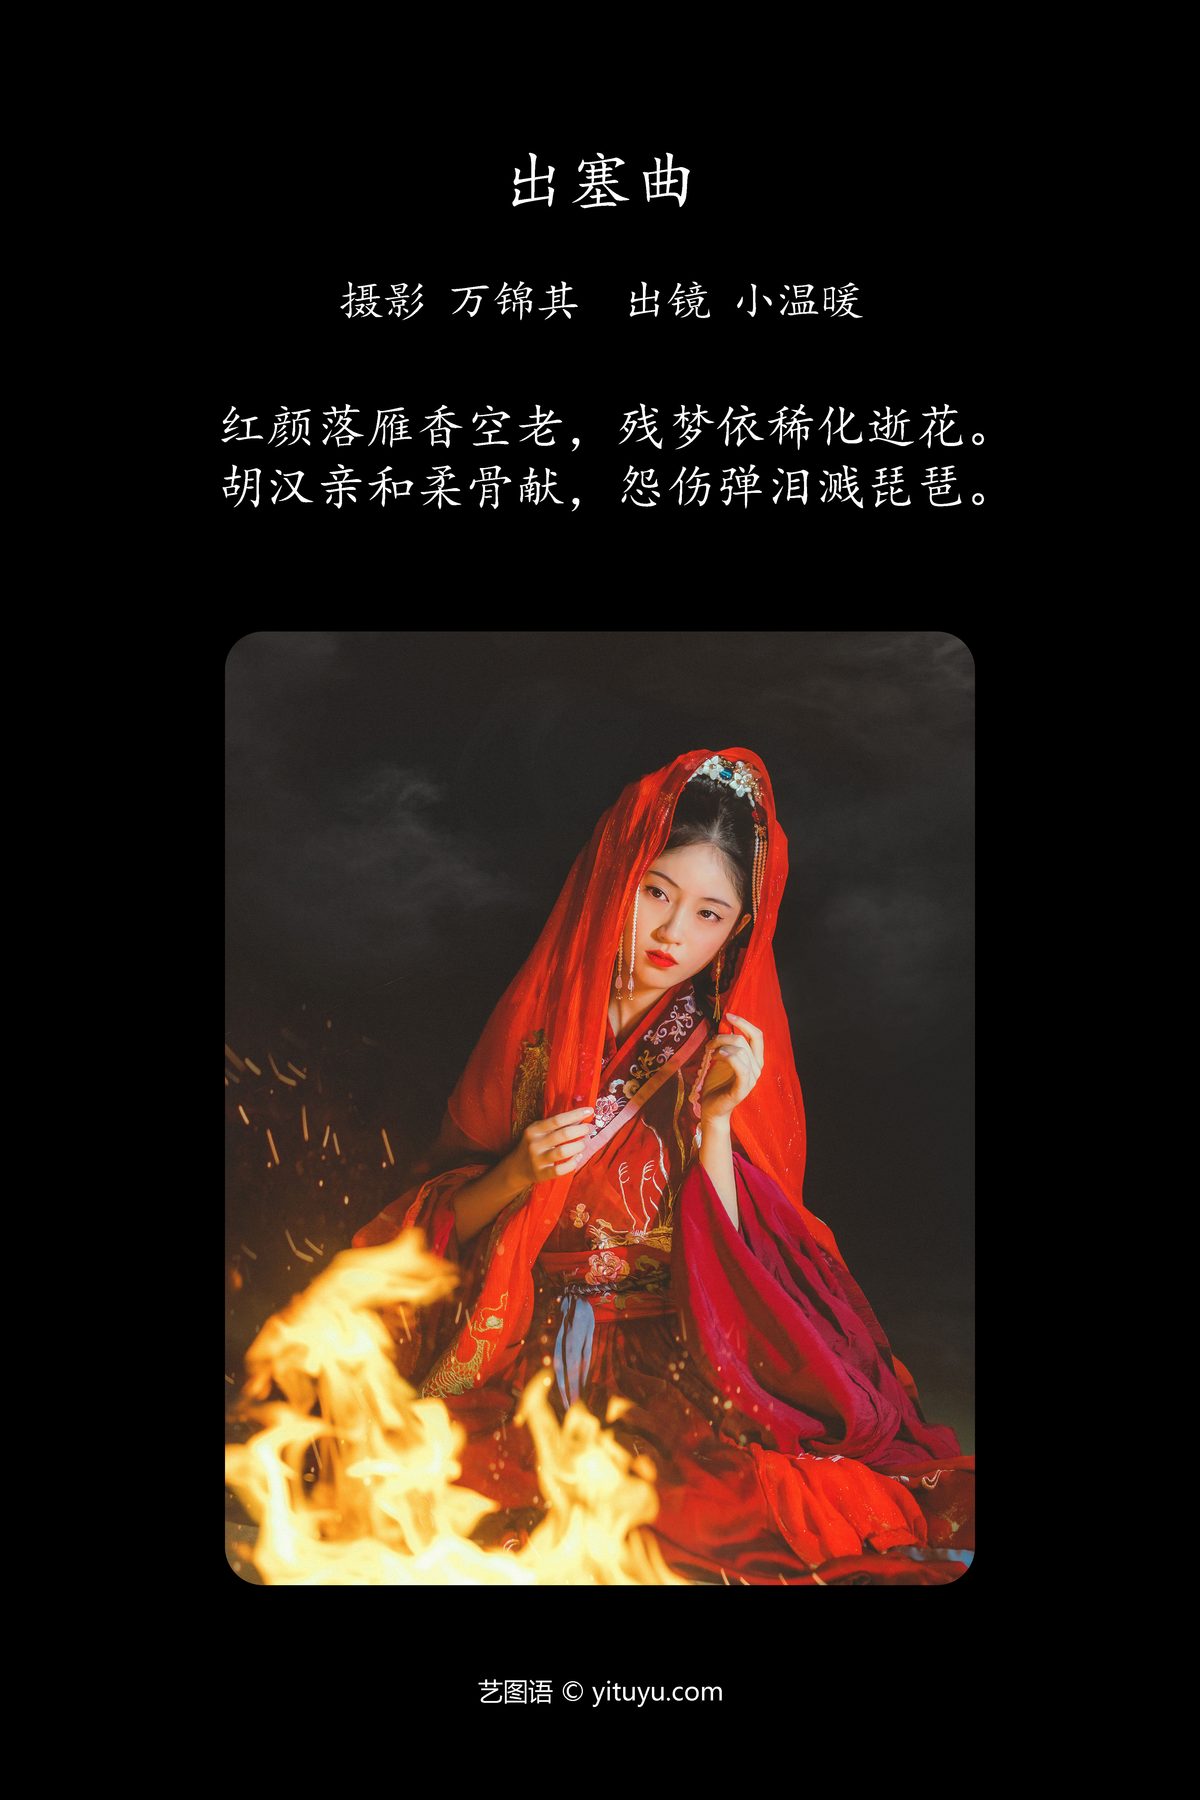 YiTuYu艺图语 Vol 4524 Xiao Wen Nuan Xiang Yao Ge Da Tai Yang 0002 3130626170.jpg